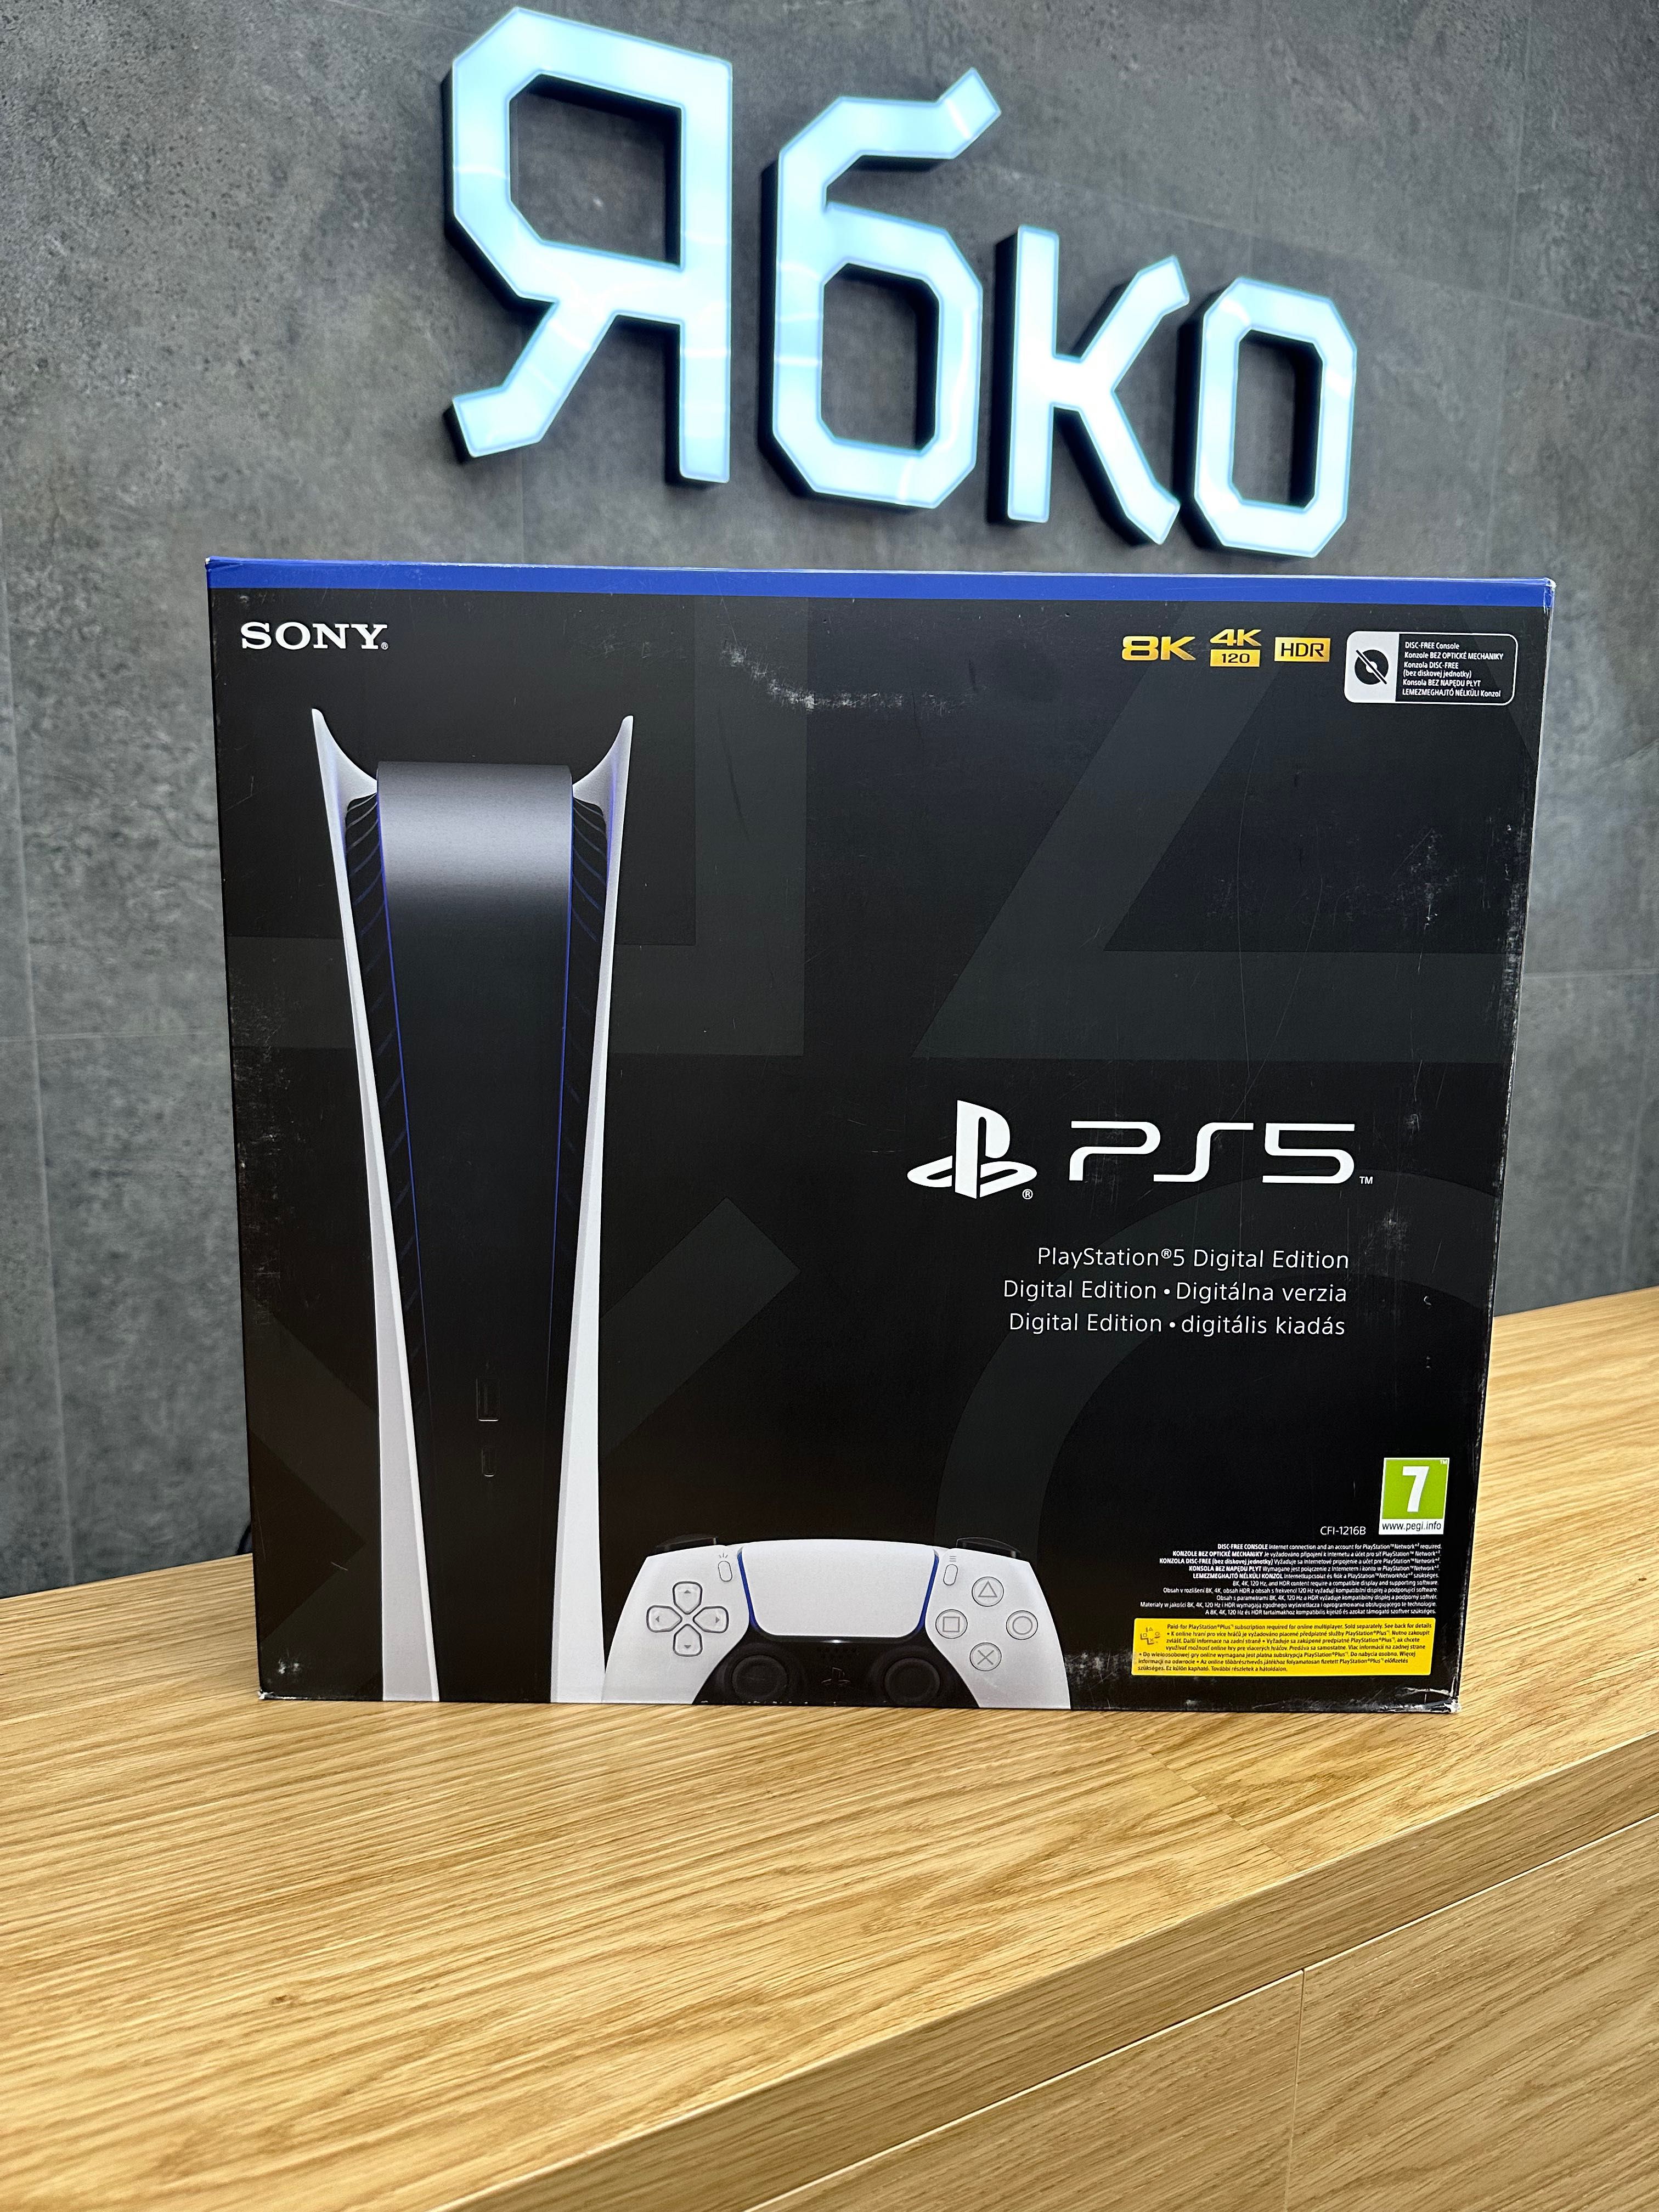 Sony PlayStation 5 Slim/Digital/Blue-Ray Edition Ябко Трускавець